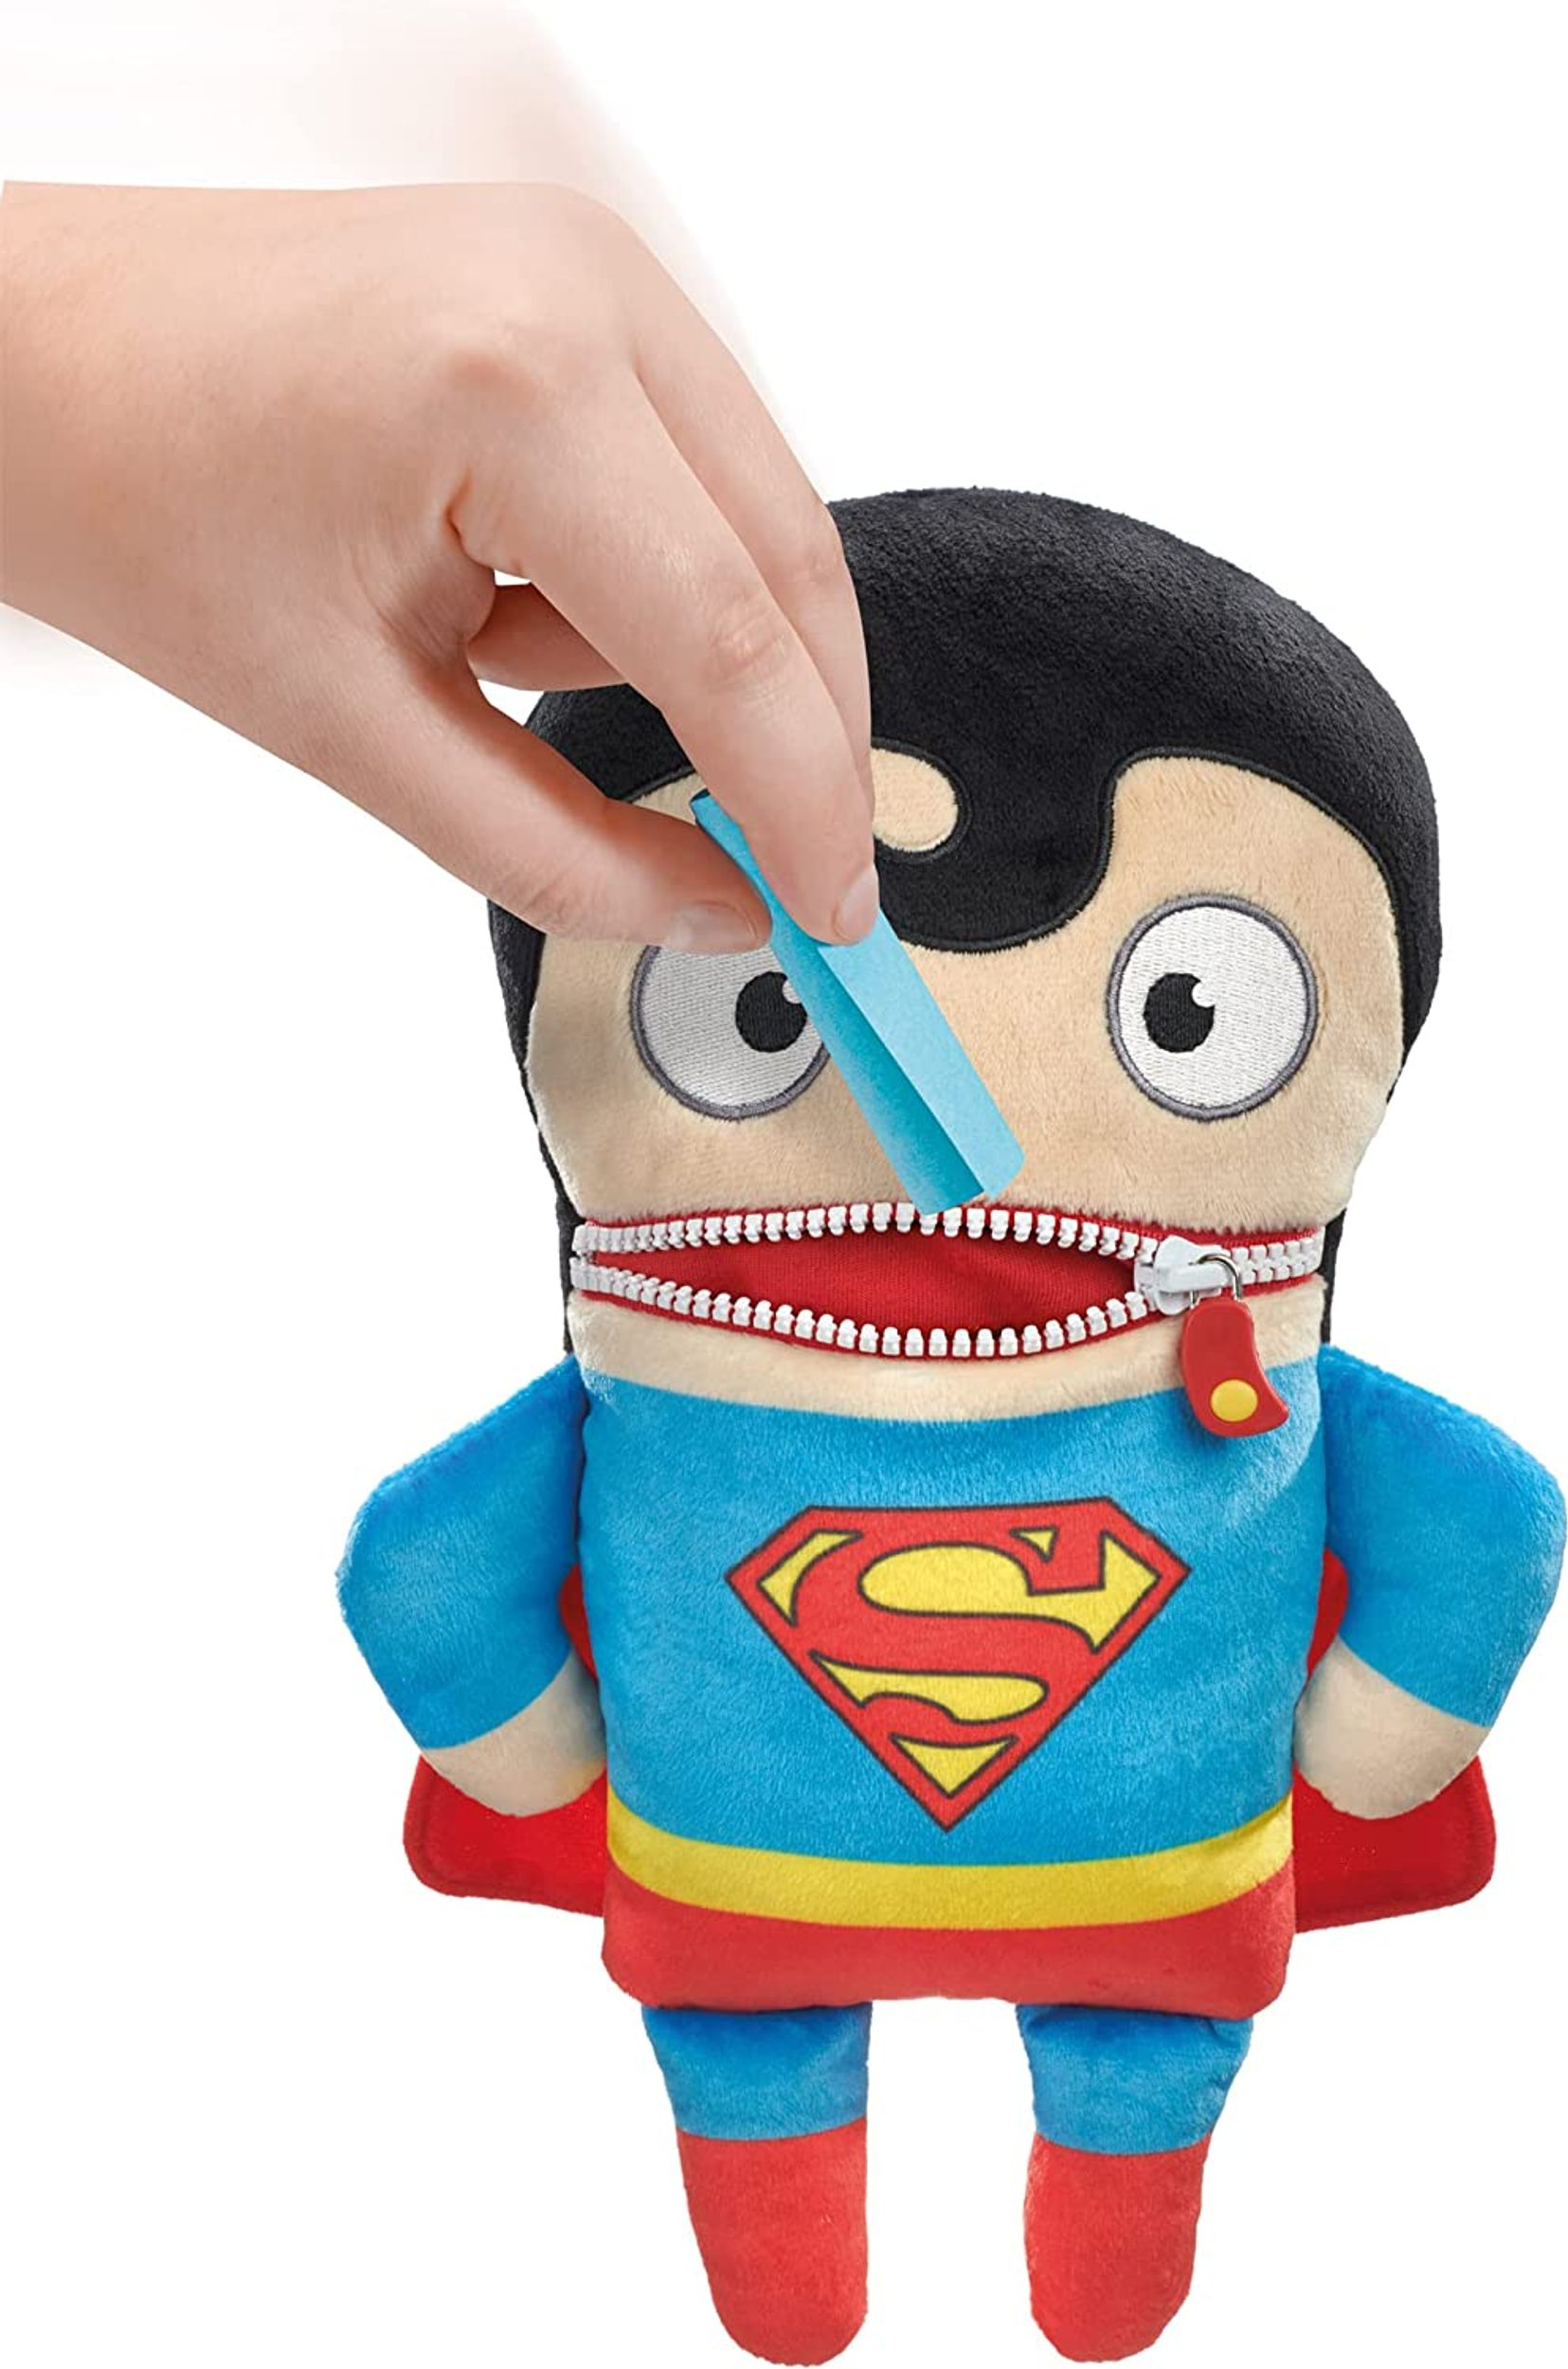 SCHMIDT SPIELE Sorgenfresser Hero Superman DC Plüschfigur Super